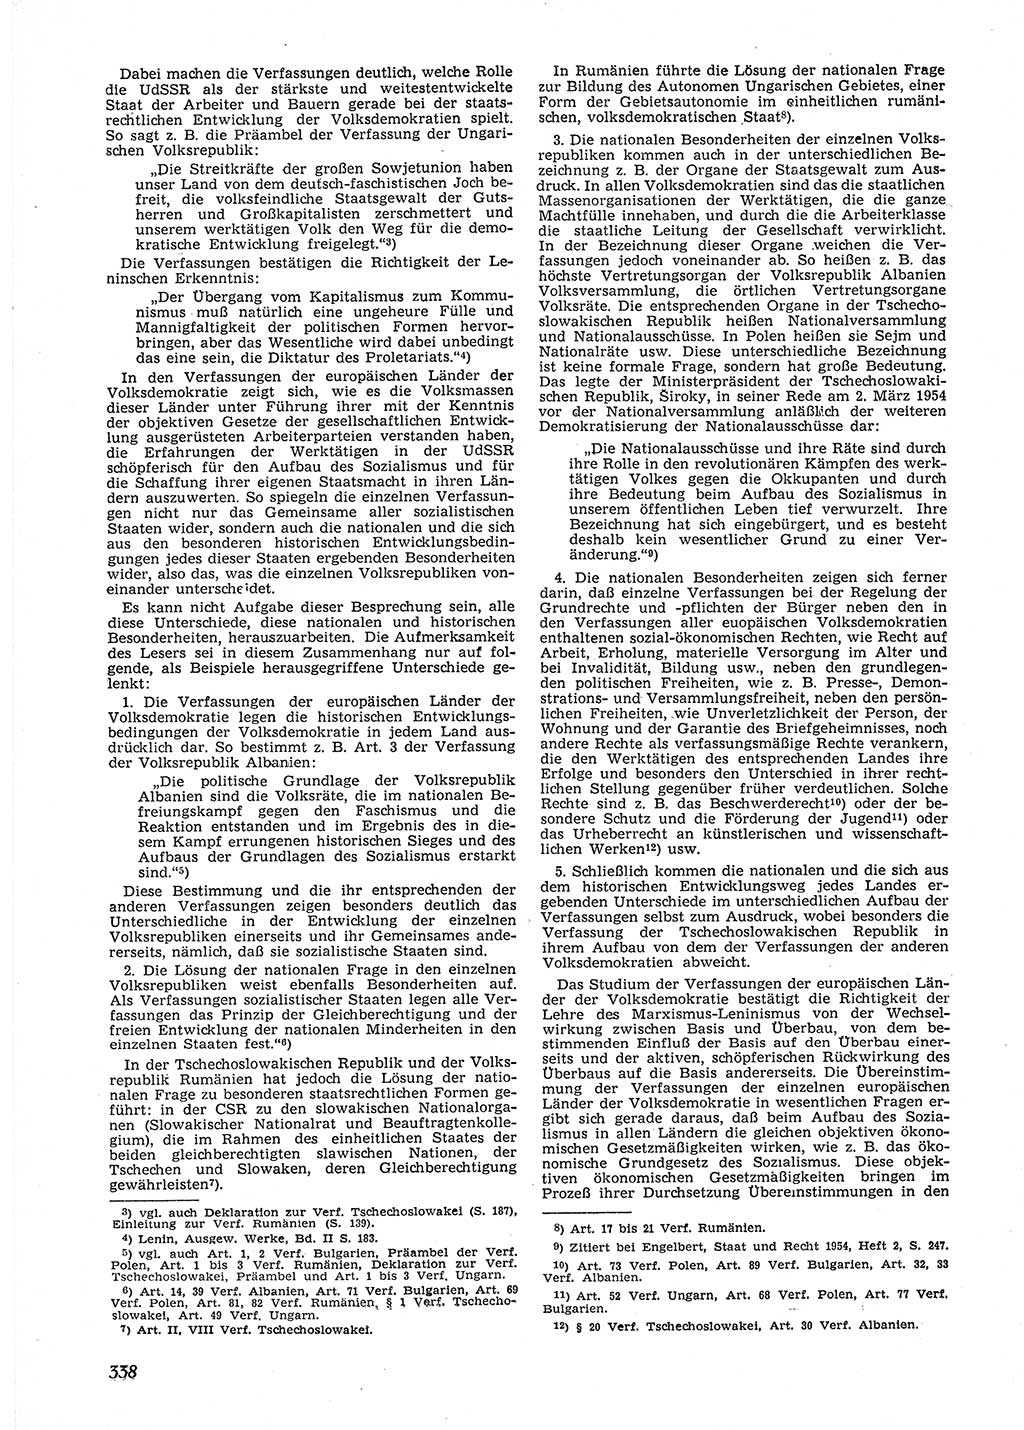 Neue Justiz (NJ), Zeitschrift für Recht und Rechtswissenschaft [Deutsche Demokratische Republik (DDR)], 9. Jahrgang 1955, Seite 338 (NJ DDR 1955, S. 338)